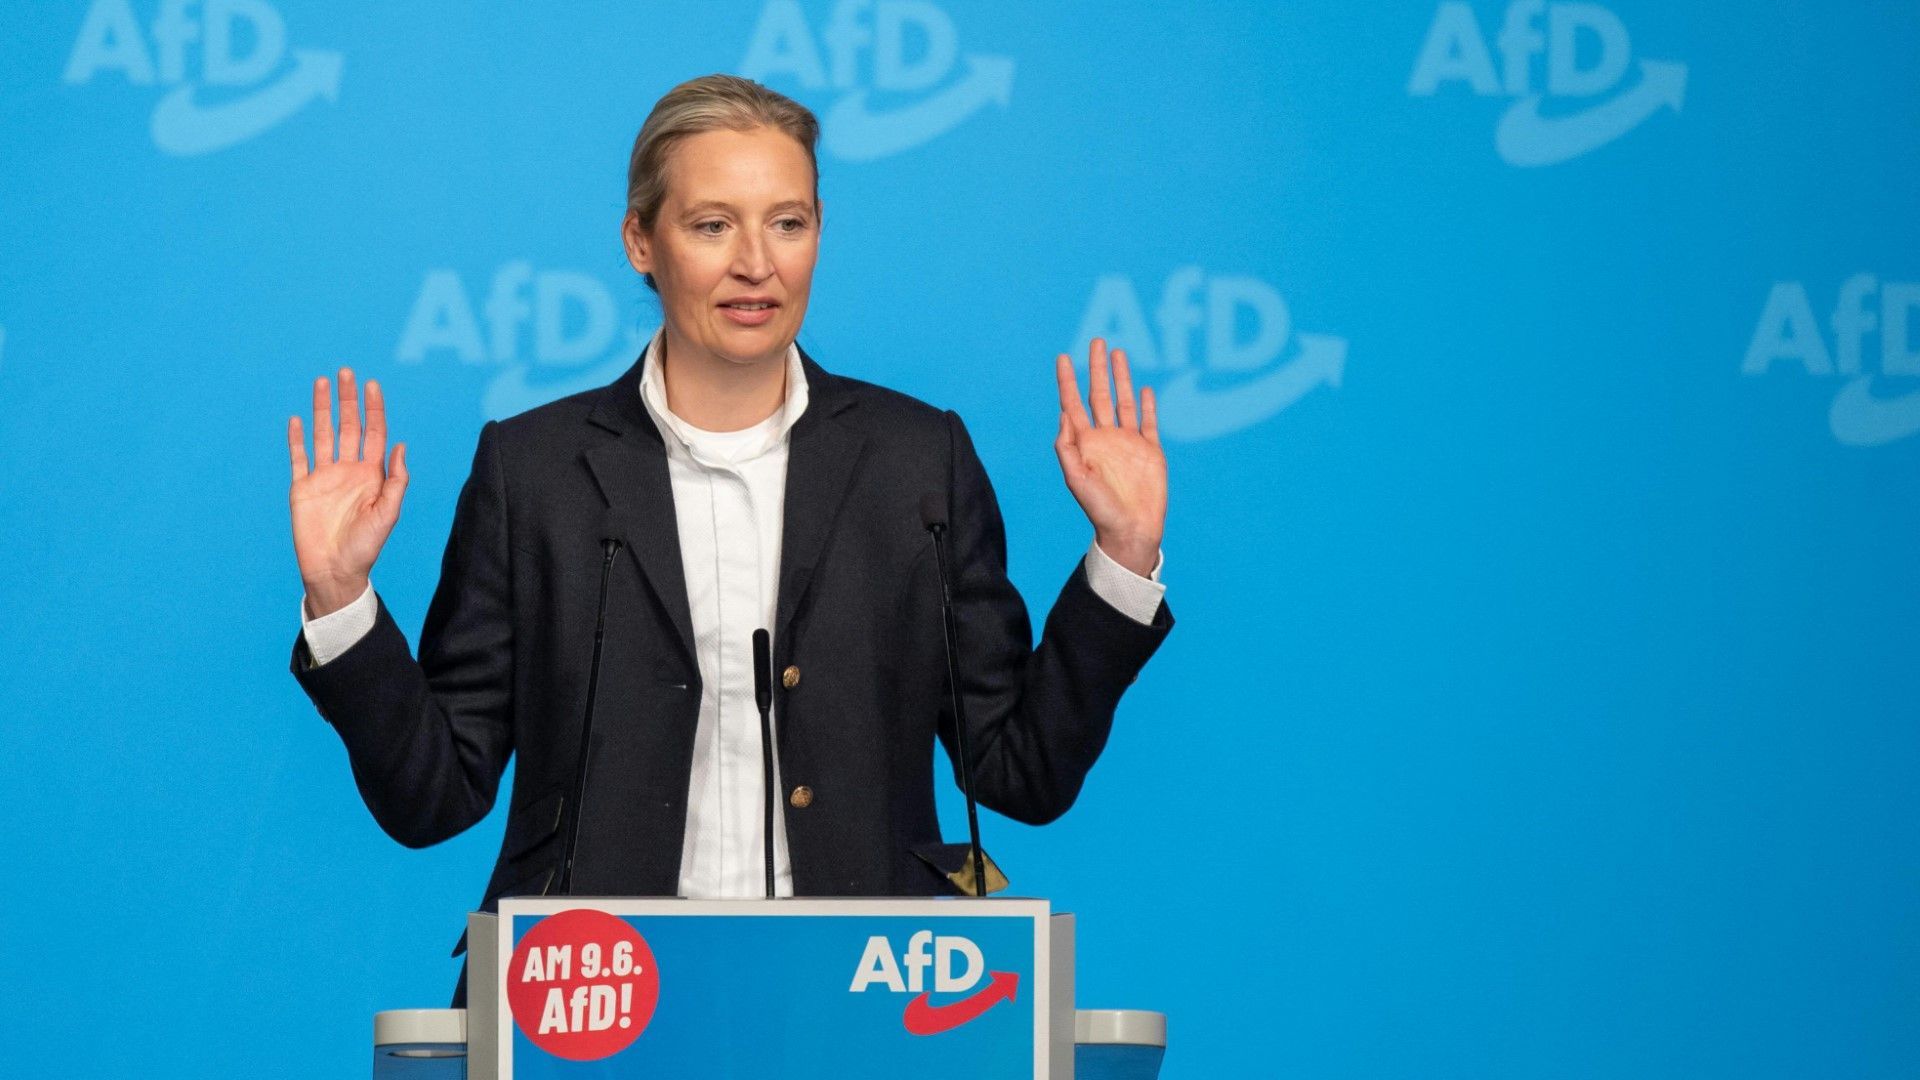 AfD-Europawahlkampf: Parteispitze und Anhänger trotzen Vorwürfen